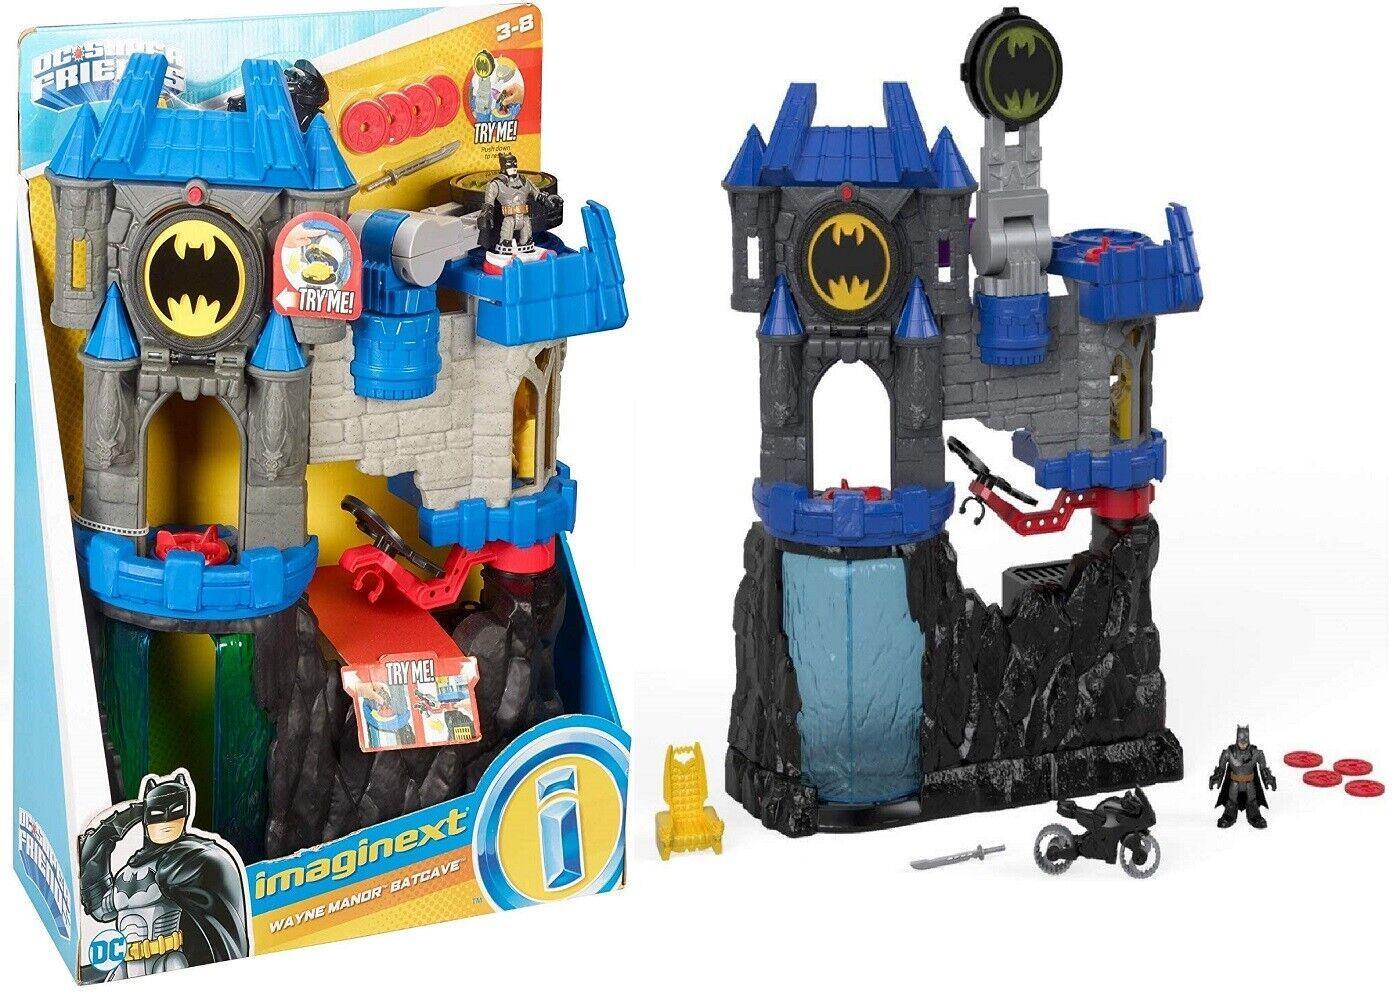 DC Super Friends Wayne Manor Batcave Ages 3+ Toy Batman Batmobile Car Bike Race